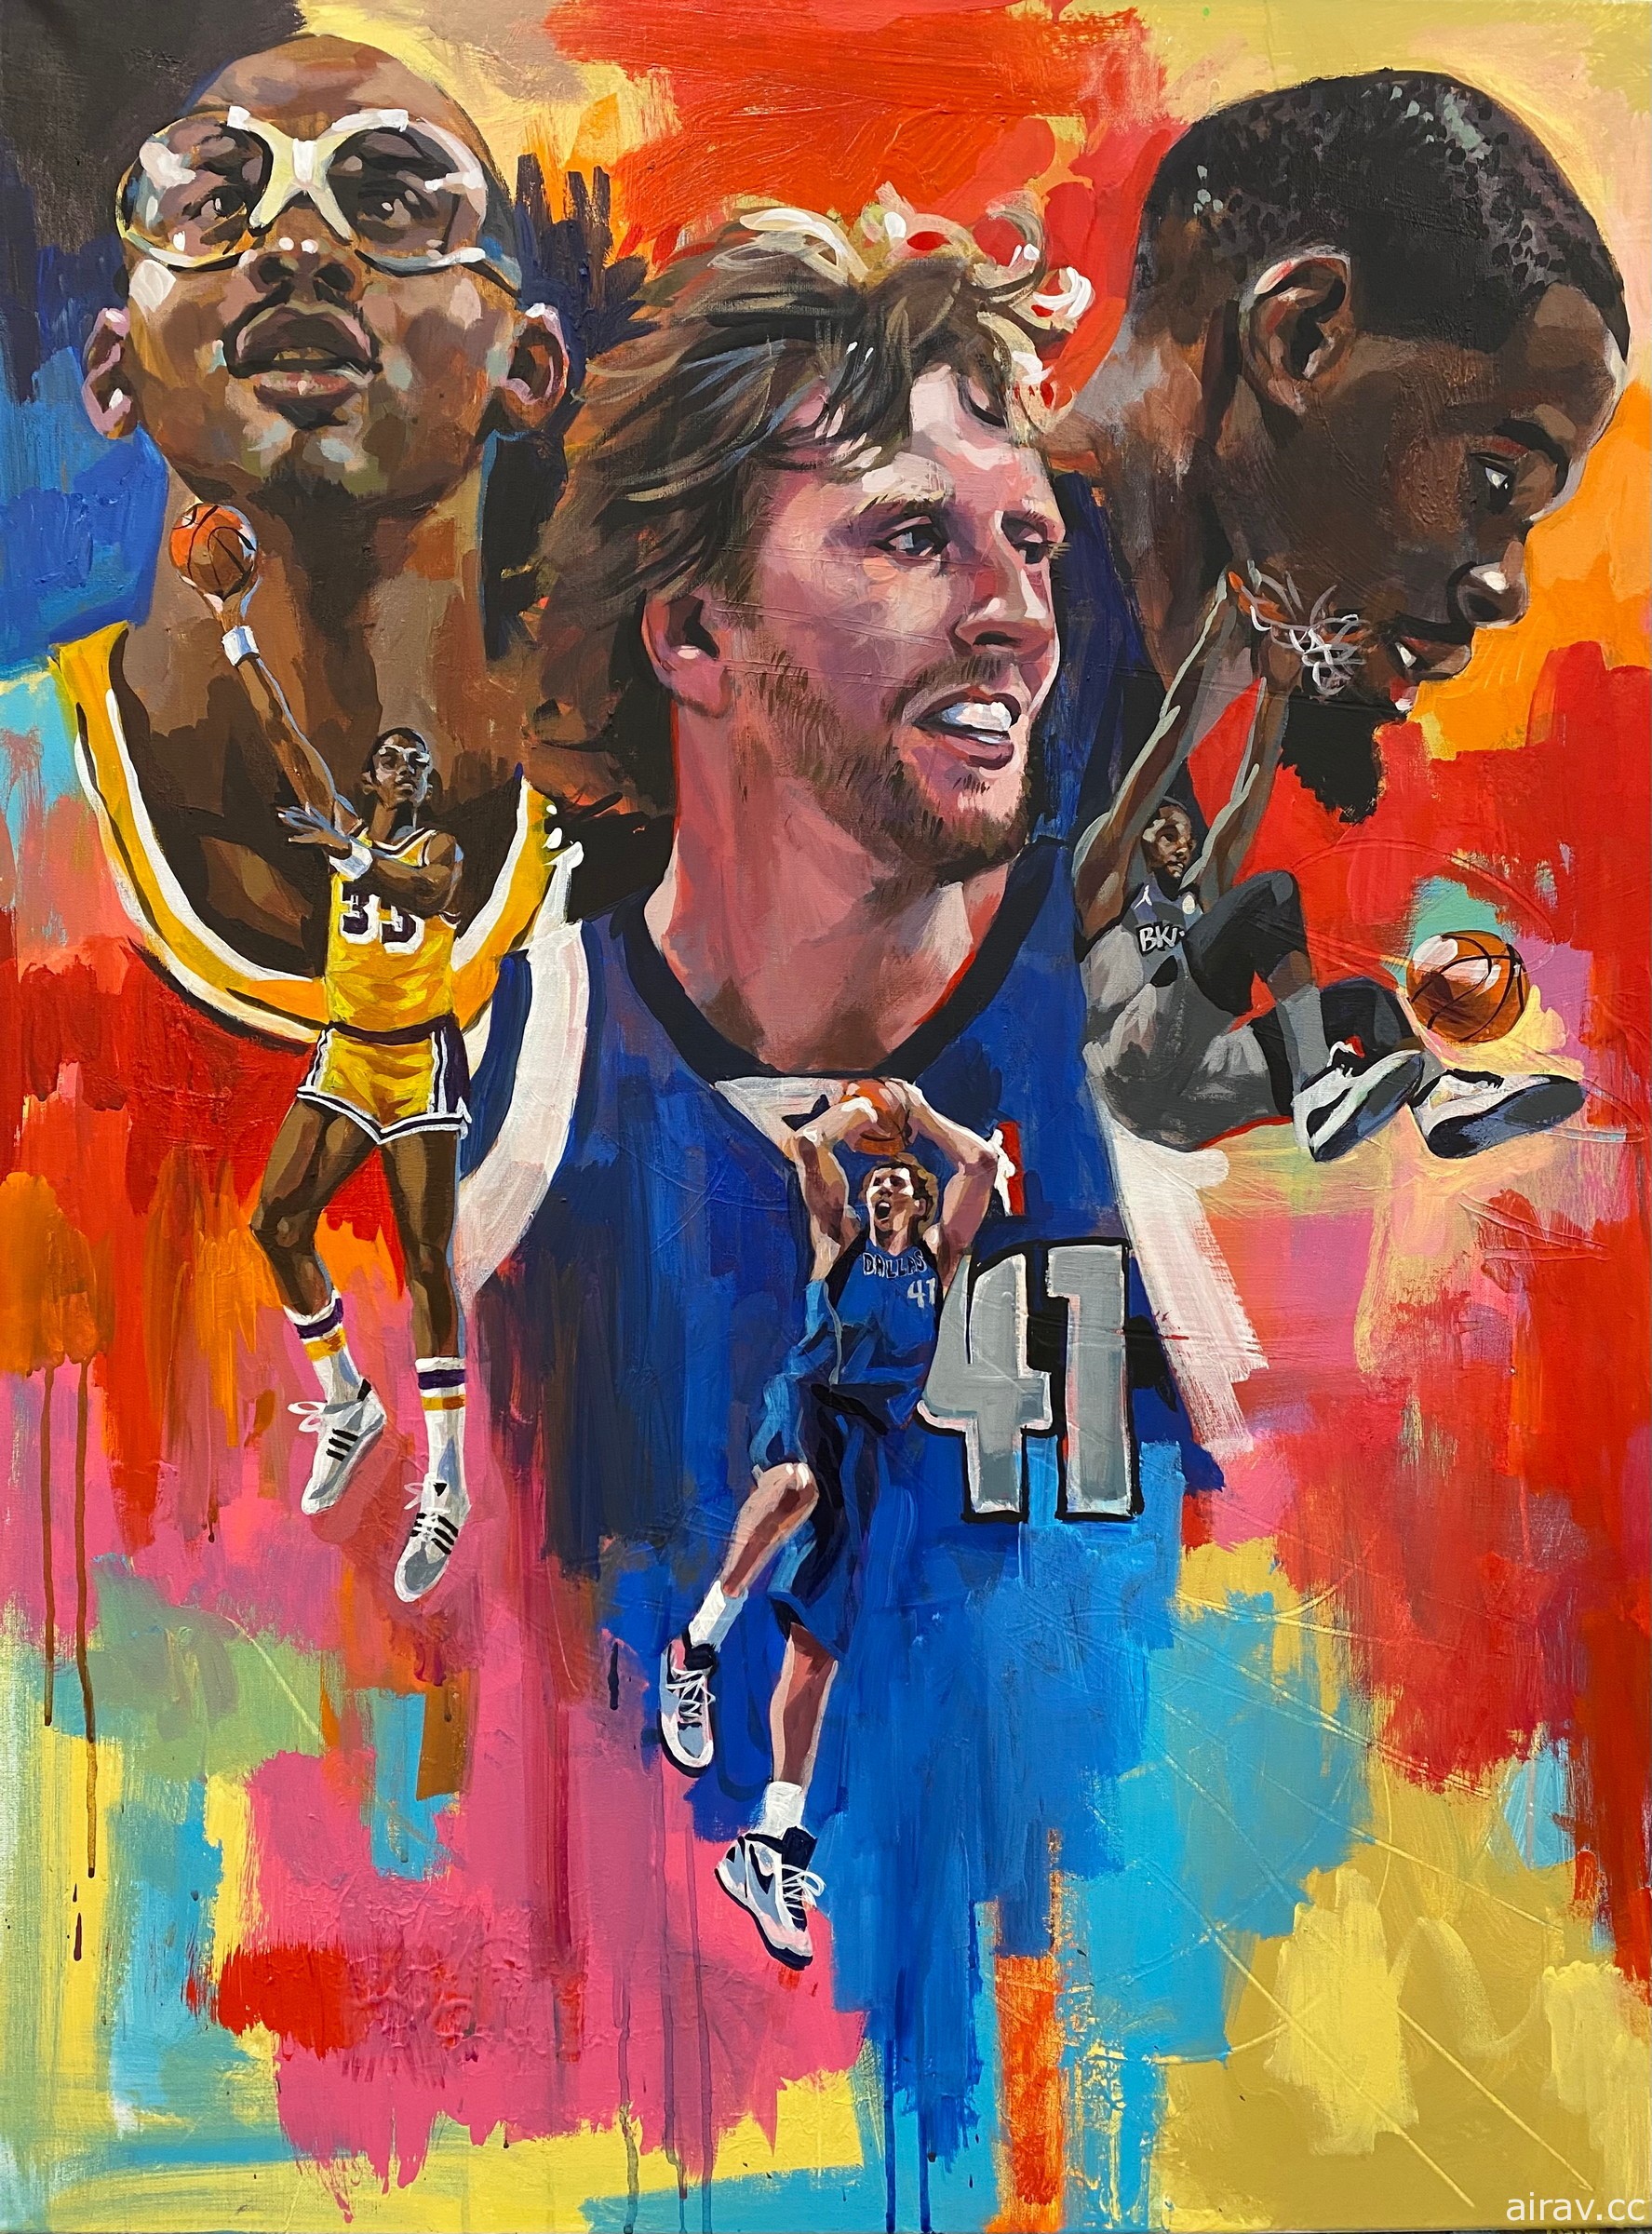 《NBA 2K22》公布 75 周年紀念版封面插畫 邀請杜蘭特、諾威斯基與賈霸擔任封面球星